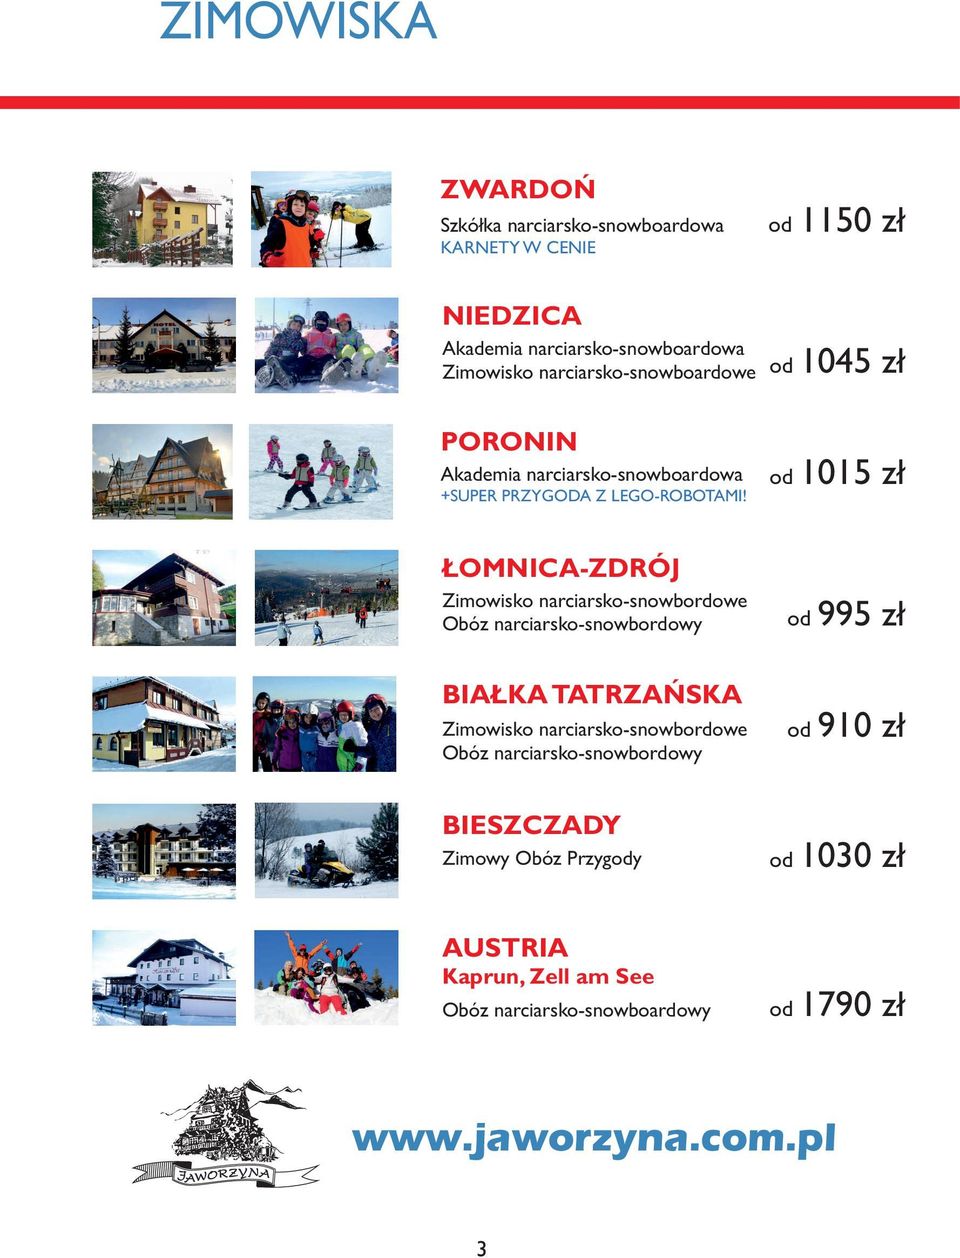 od 1015 zł ŁOMNICA-ZDRÓJ Zimowisko narciarsko-snowbordowe Obóz narciarsko-snowbordowy od 995 zł BIAŁKA TATRZAŃSKA Zimowisko